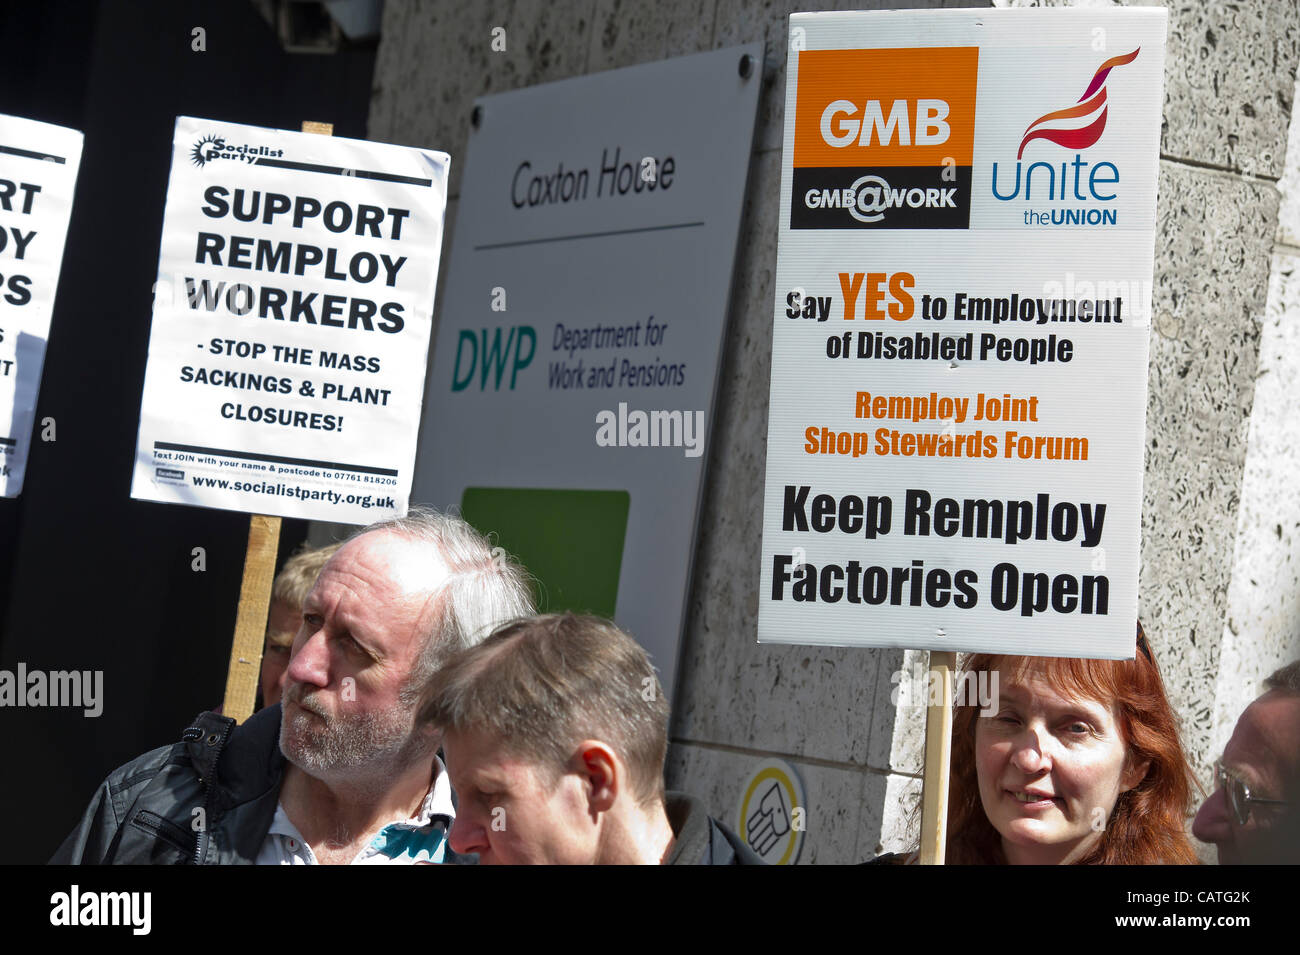 Una protesta contro la chiusura delle fabbriche alla Remploy, per le persone con disabilità è guidata da Gail Carmail (Assistente Gen Sec di Unite) e inizia al di fuori Caxton House, il Ministero del Lavoro e delle pensioni, e finisce al di fuori del Parlamento. Westminster, Londra, UK, 20 aprile 2012. Foto Stock